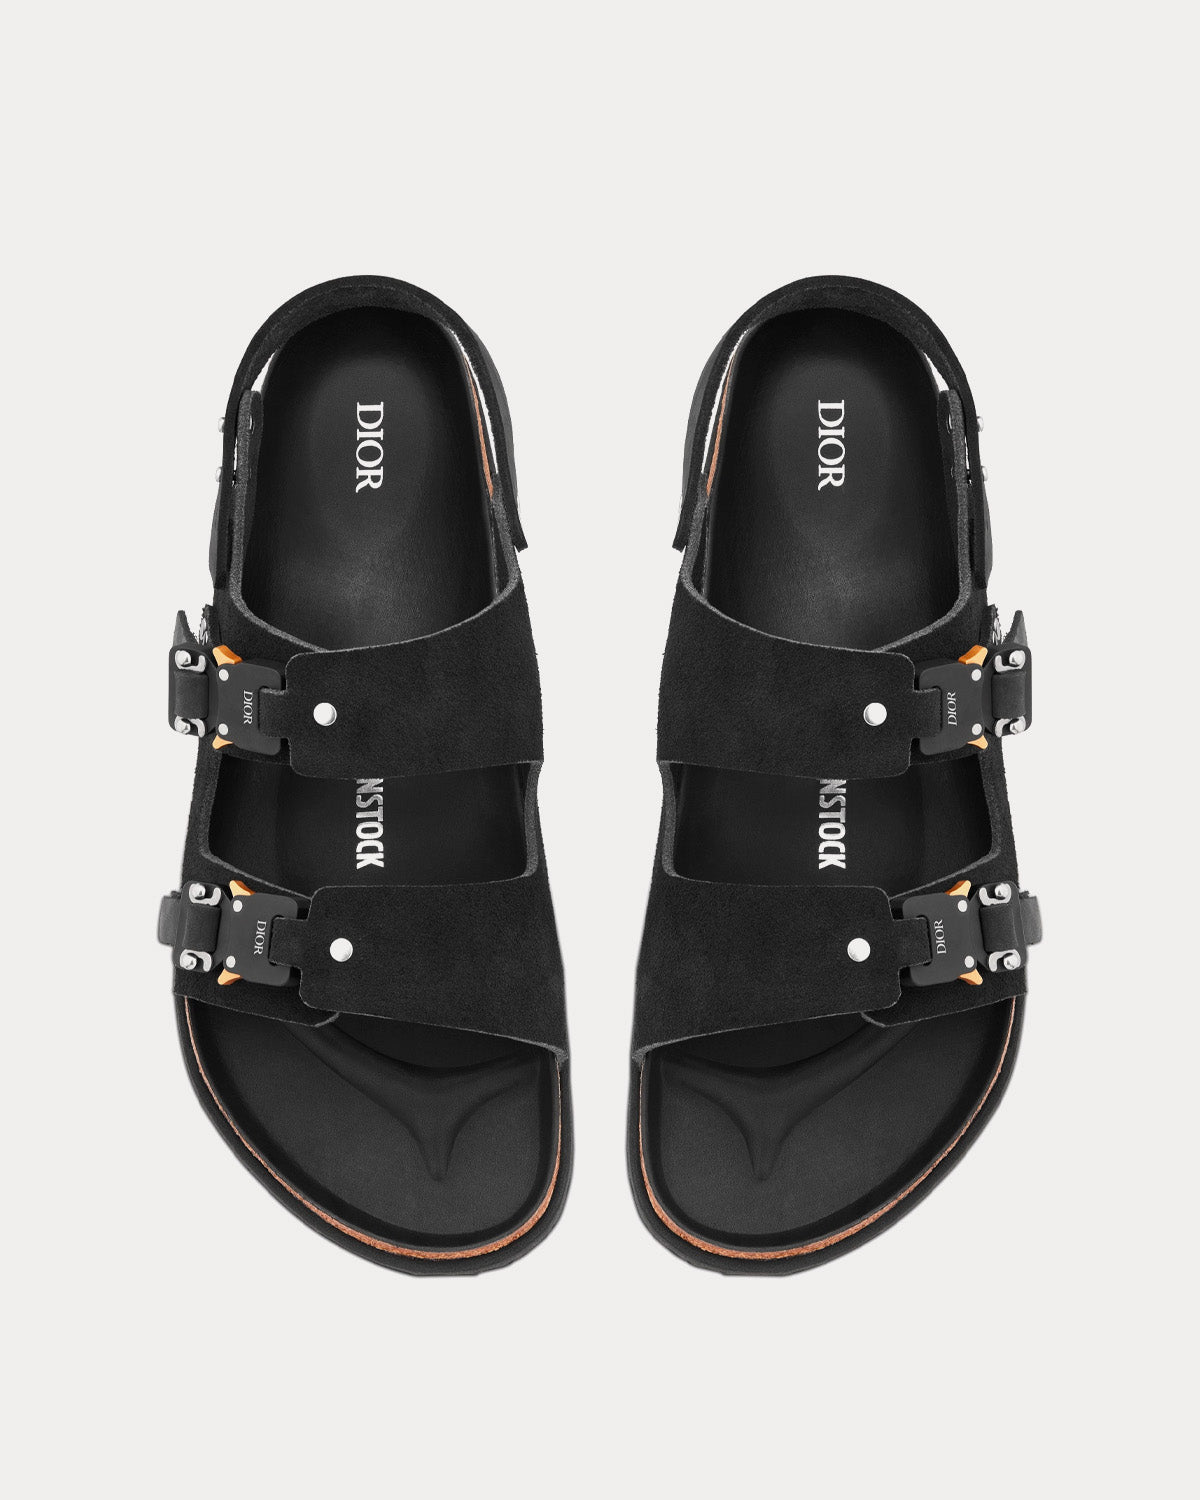 Dior x Birkenstock Milano Black Nubuck Calfskin Sandals - Sneak in 